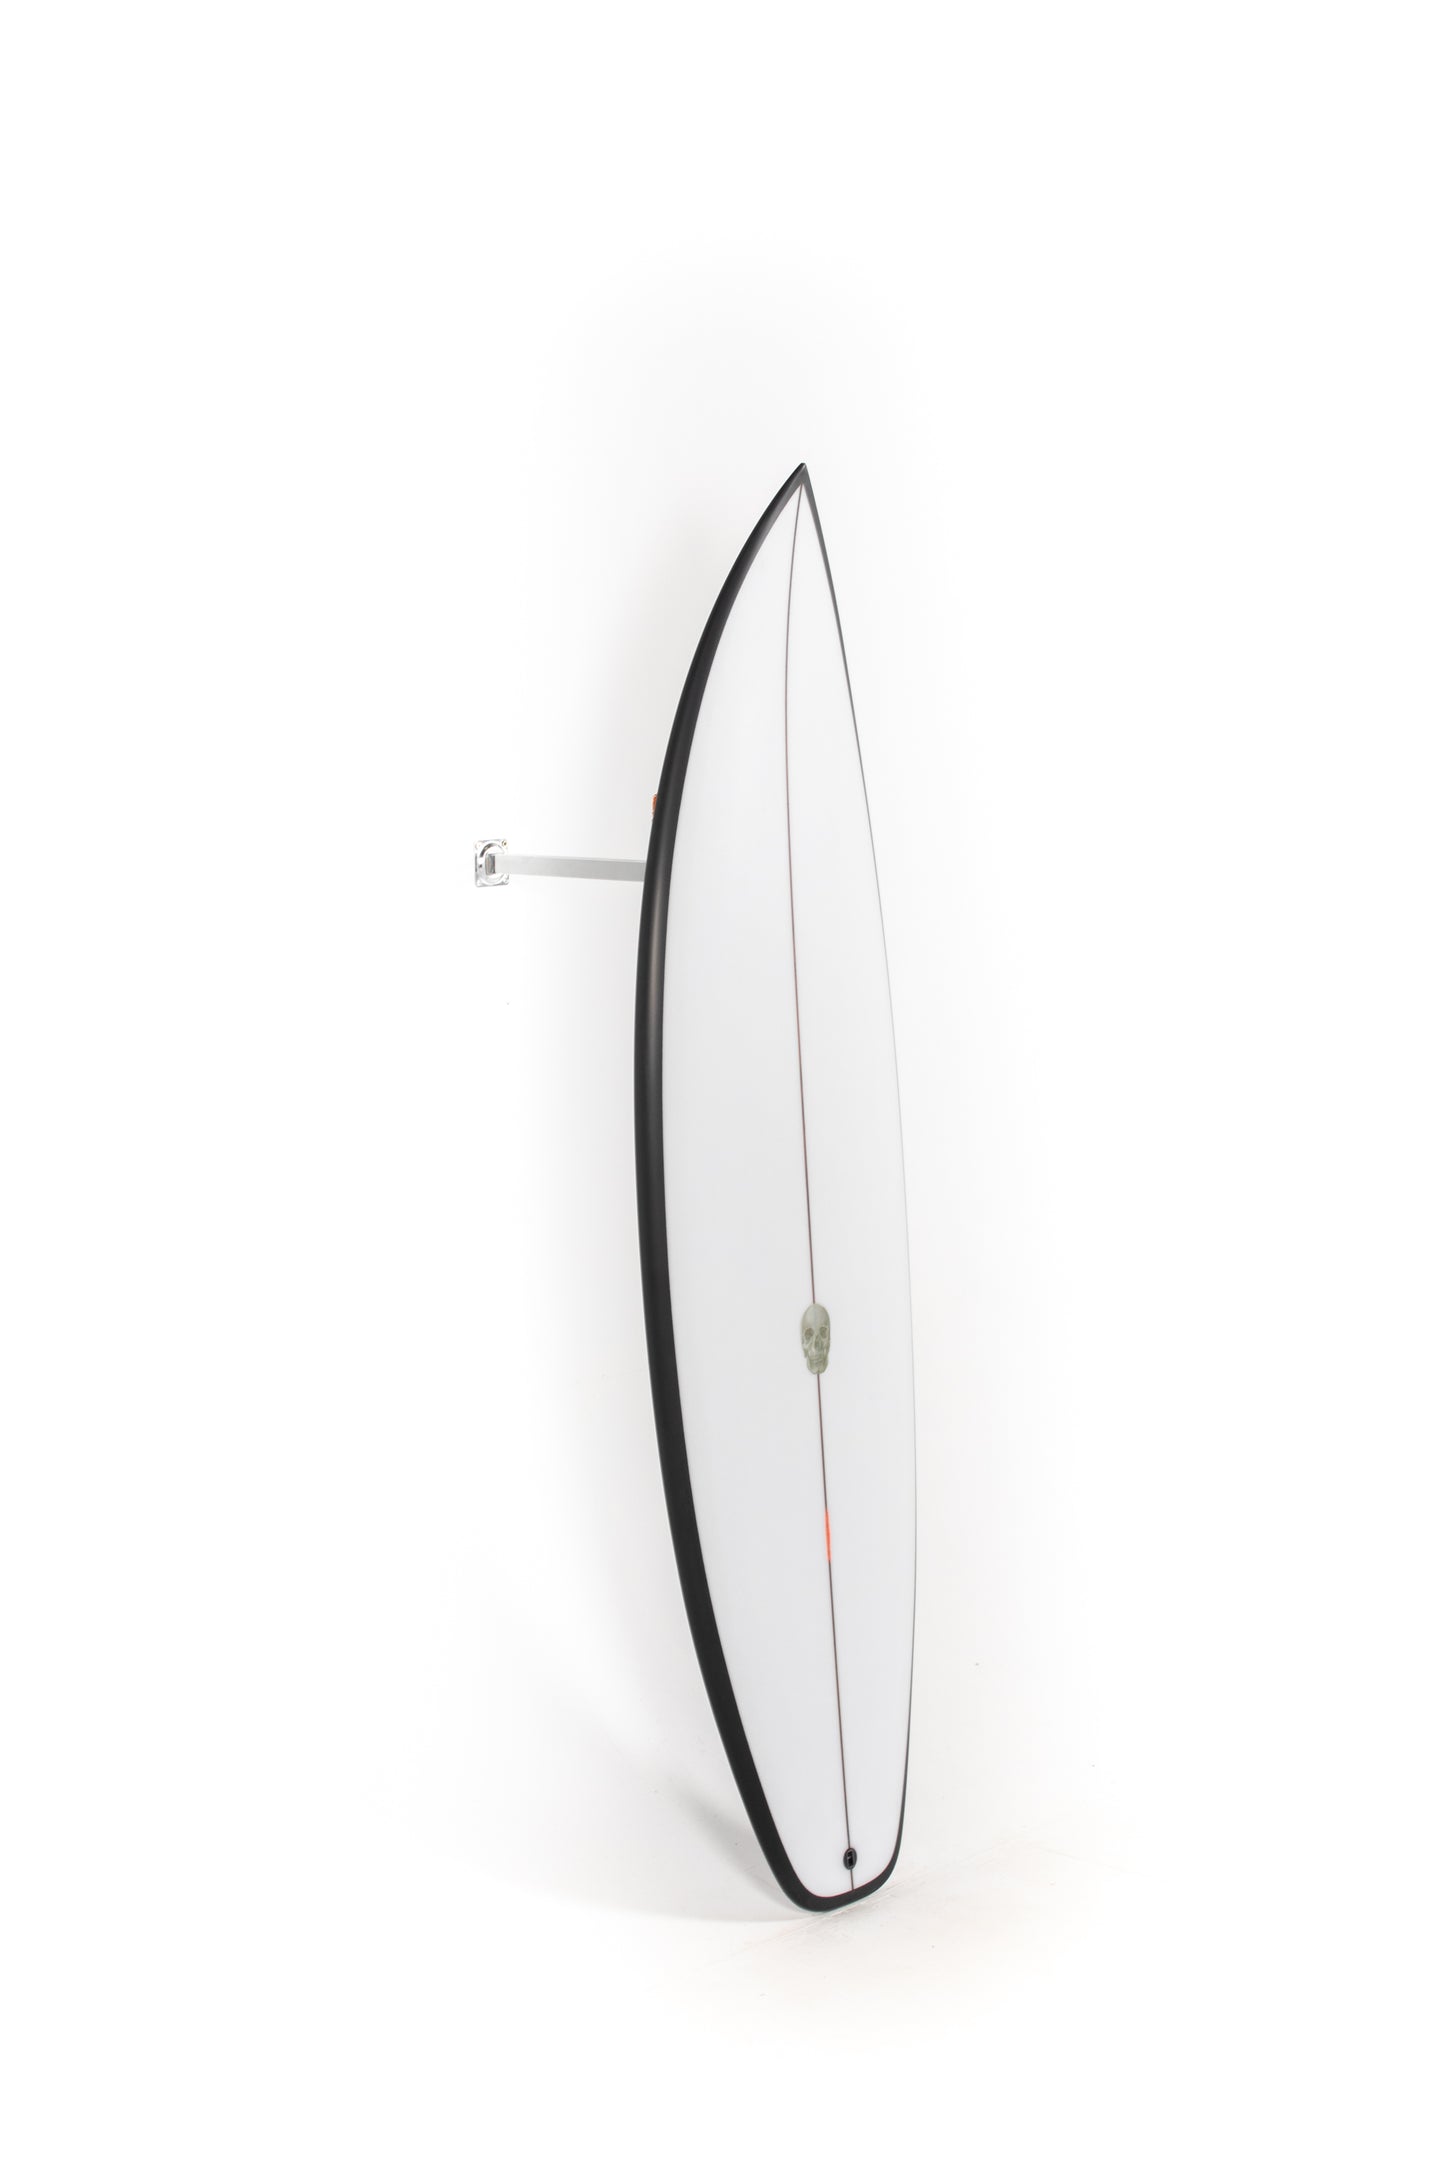 
                  
                    Pukas Surf Shop - Christenson Surfboards - OP2 - 5'8" x 19 1/4 x 2 5/16 x 26.9L - CX04805
                  
                